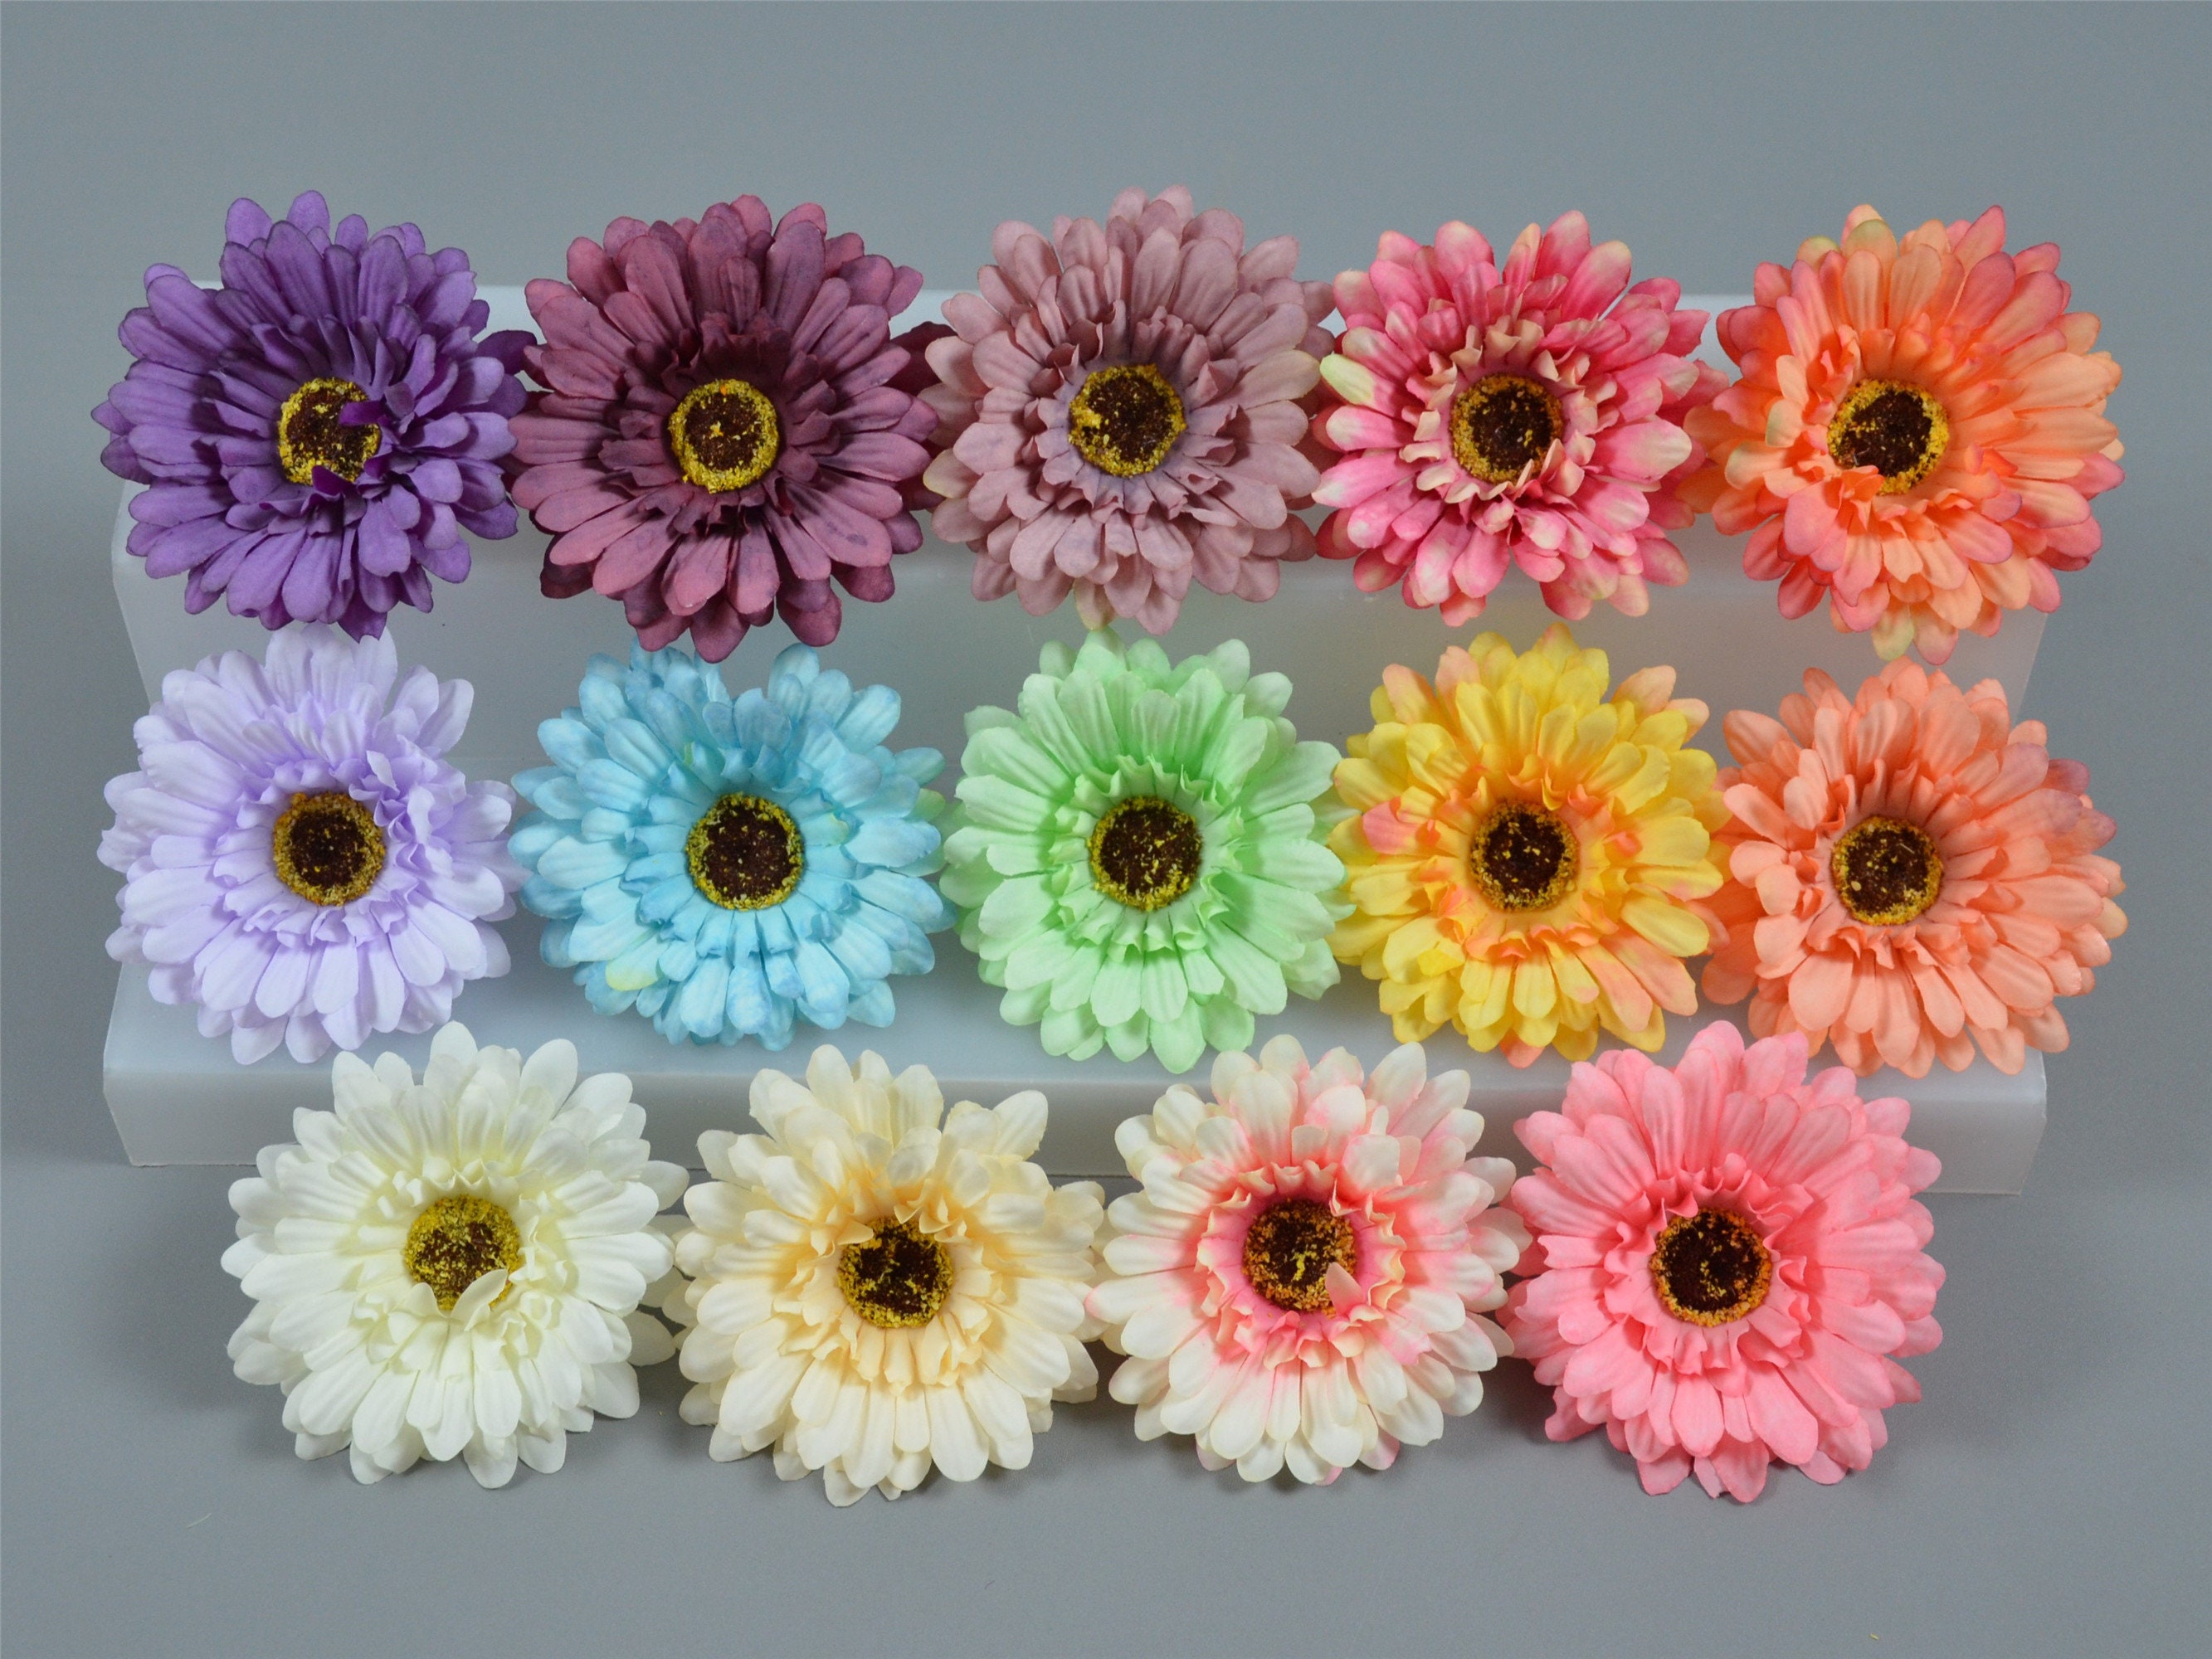 Buy Artificial Gerbera Daisy Flower Heads, Silk Daisy Flowers in